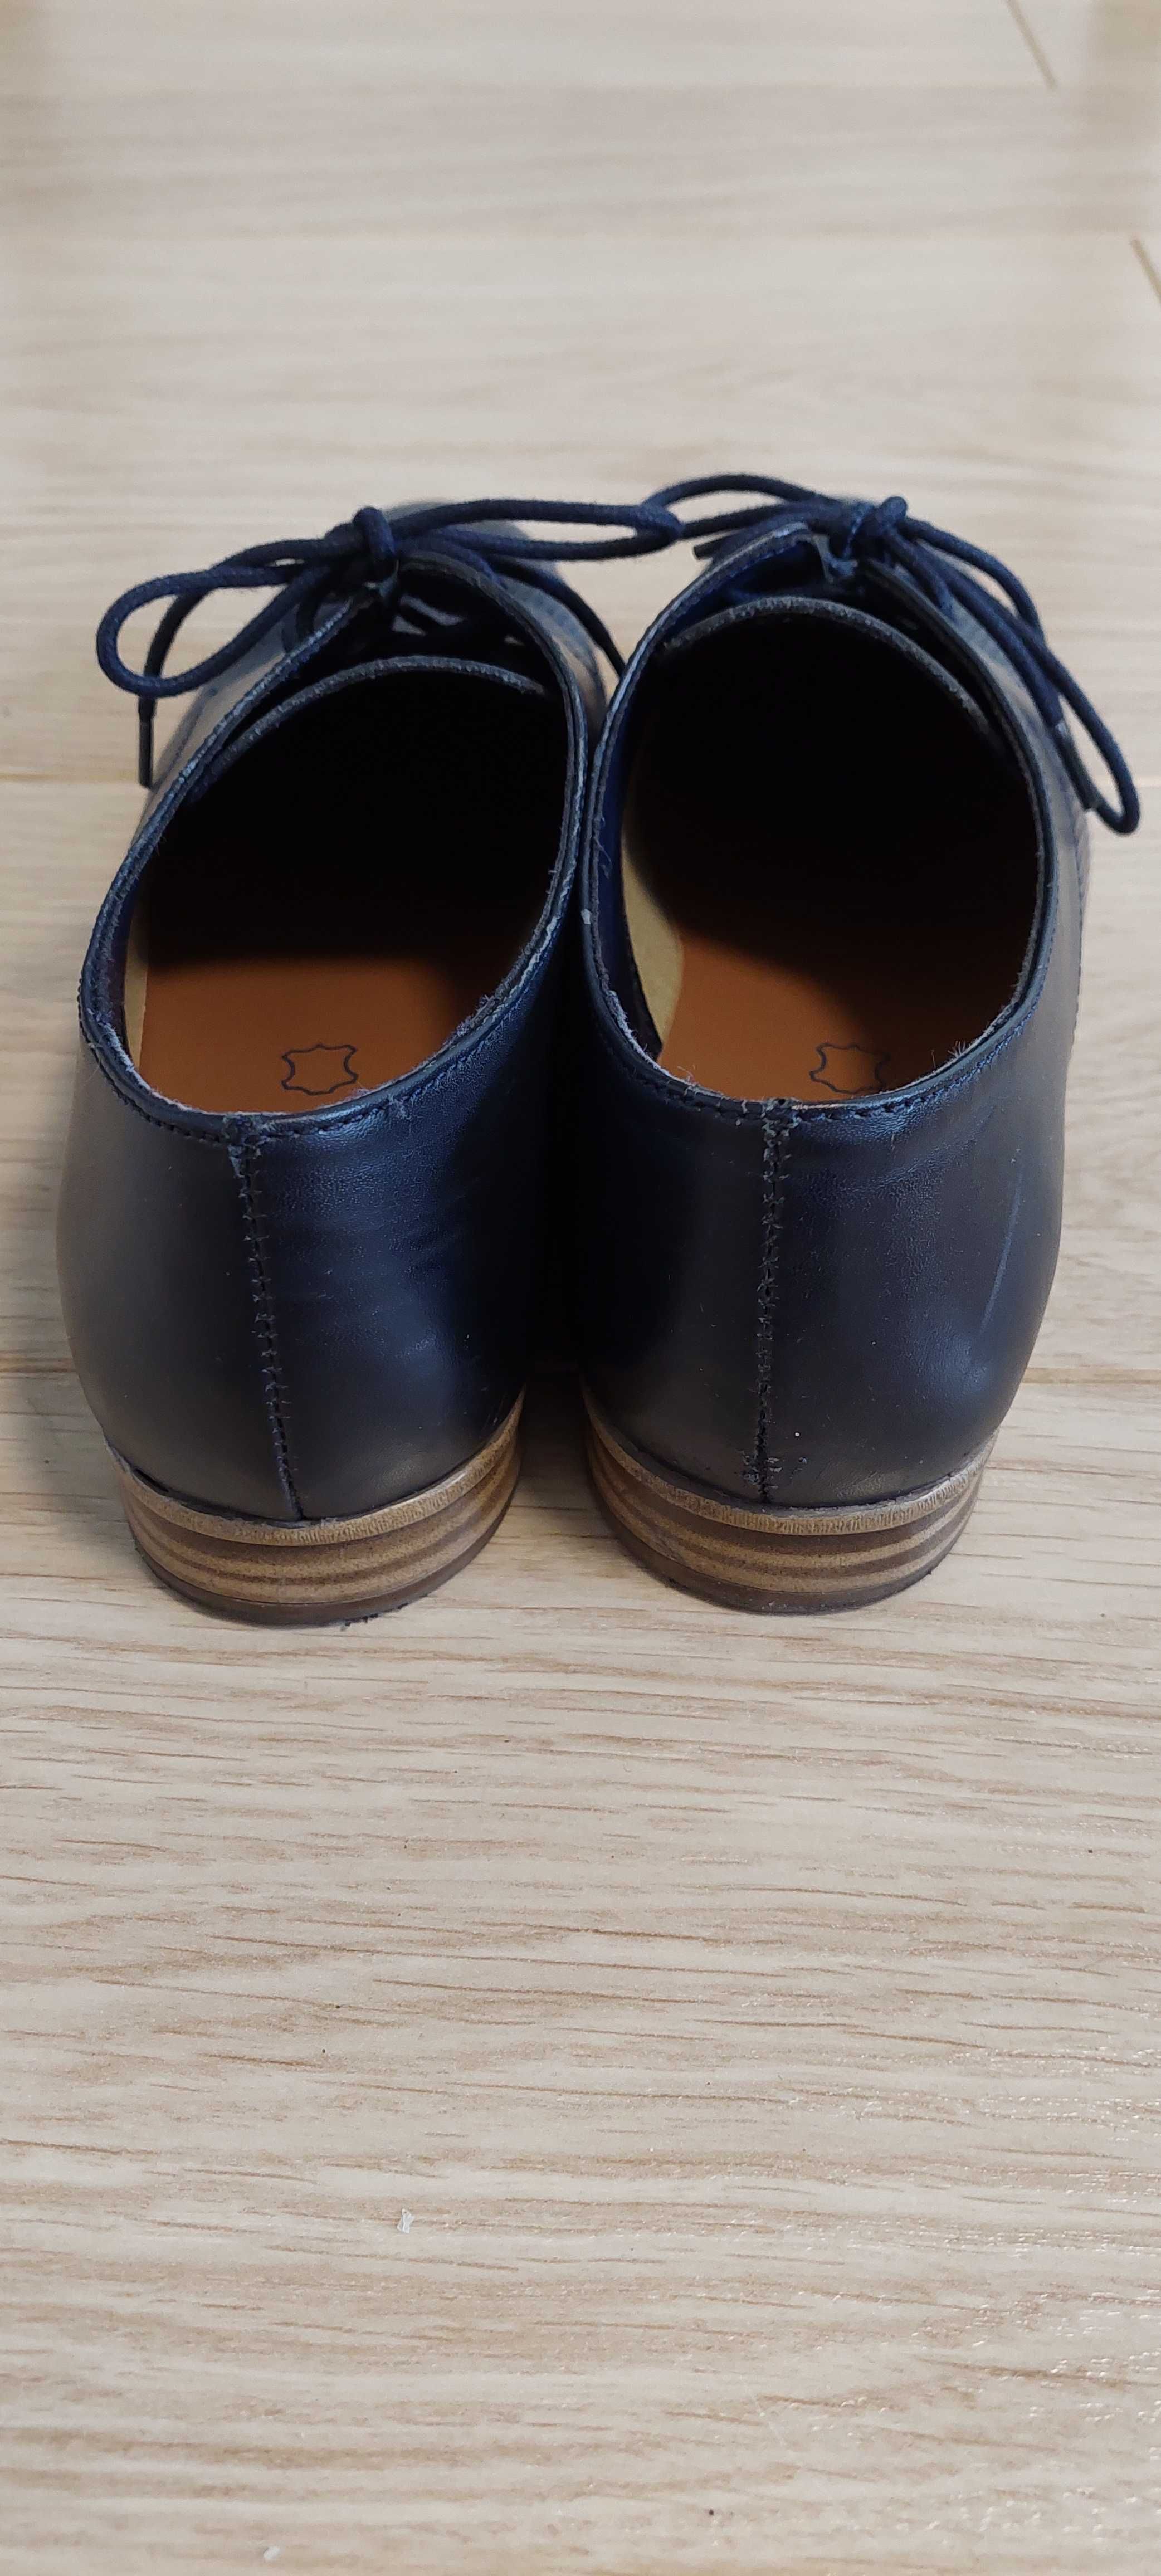 Granatowe buty skórzane mokasyny do I komunii dla chłopca Lasocki 36